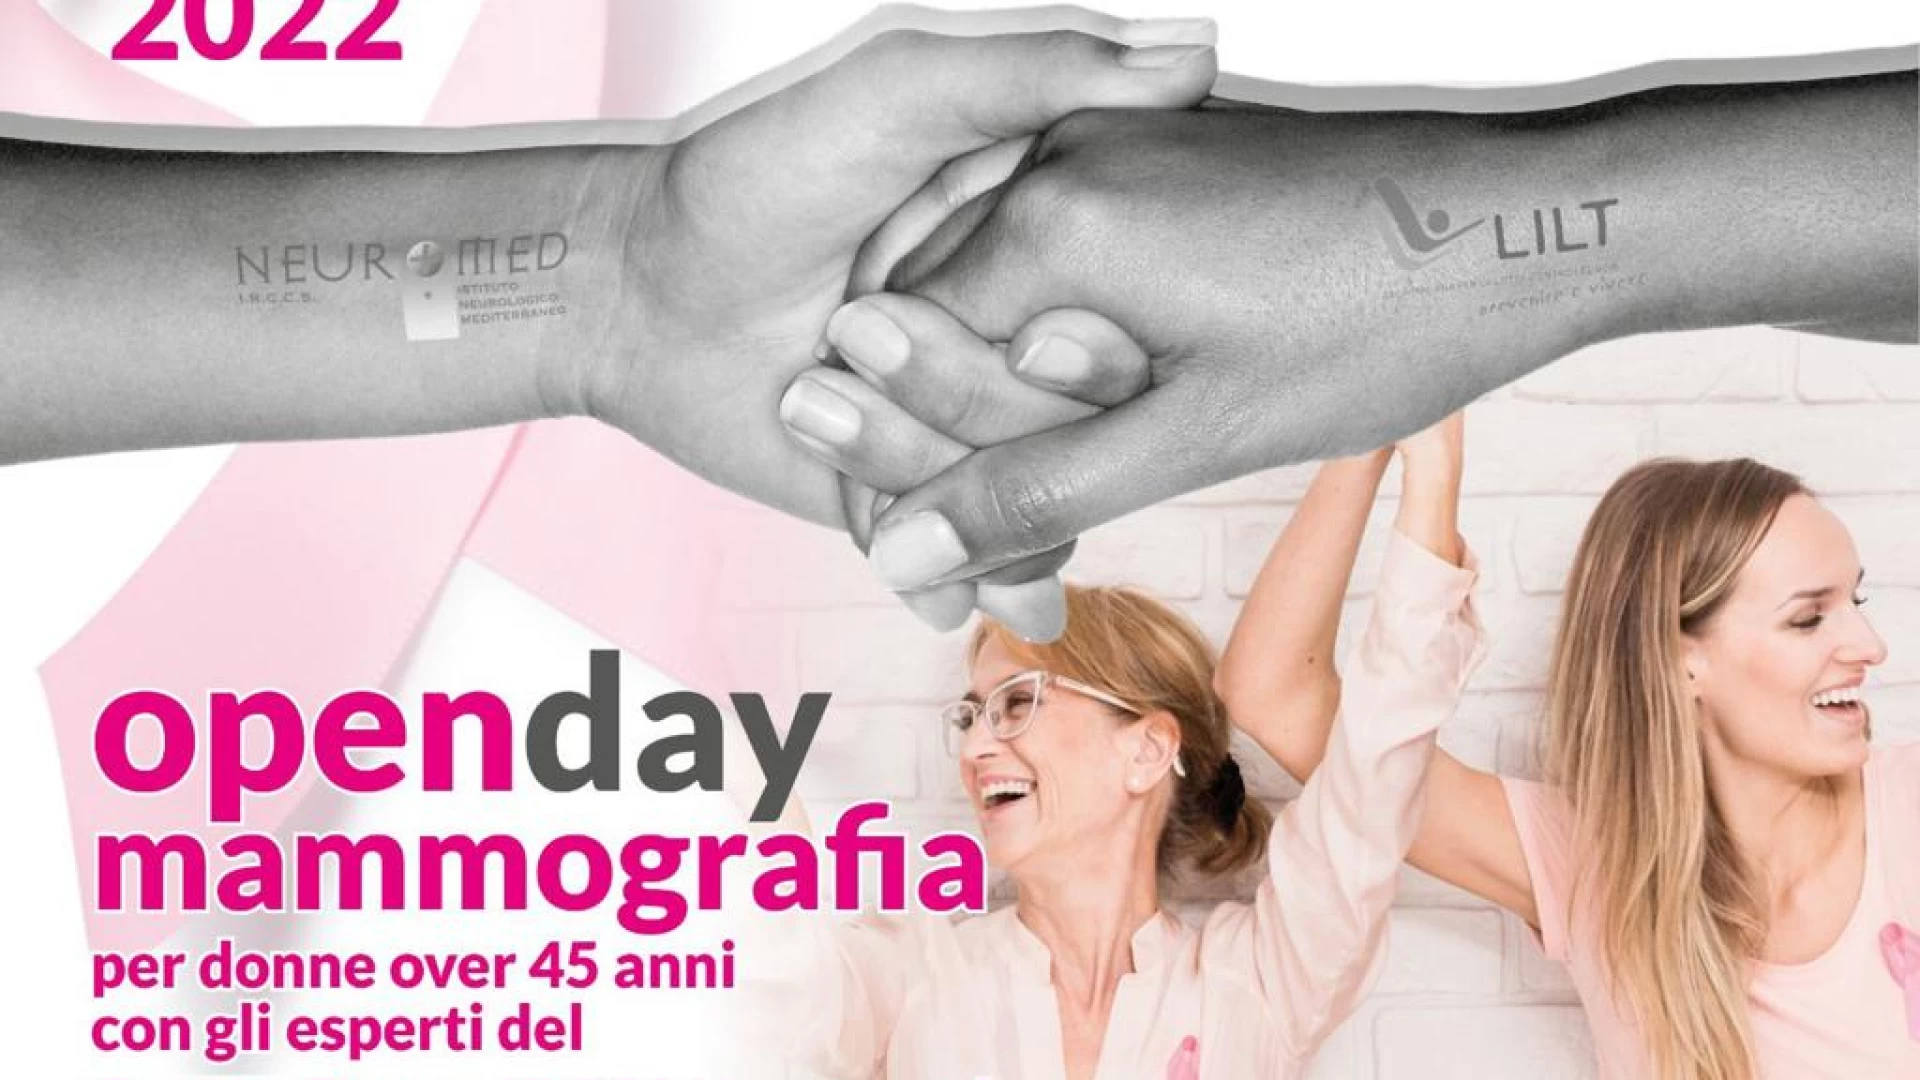 Open Day Mammografia al Neuromed di Pozzilli. Appuntamento per sabato 22 ottobre 2022.